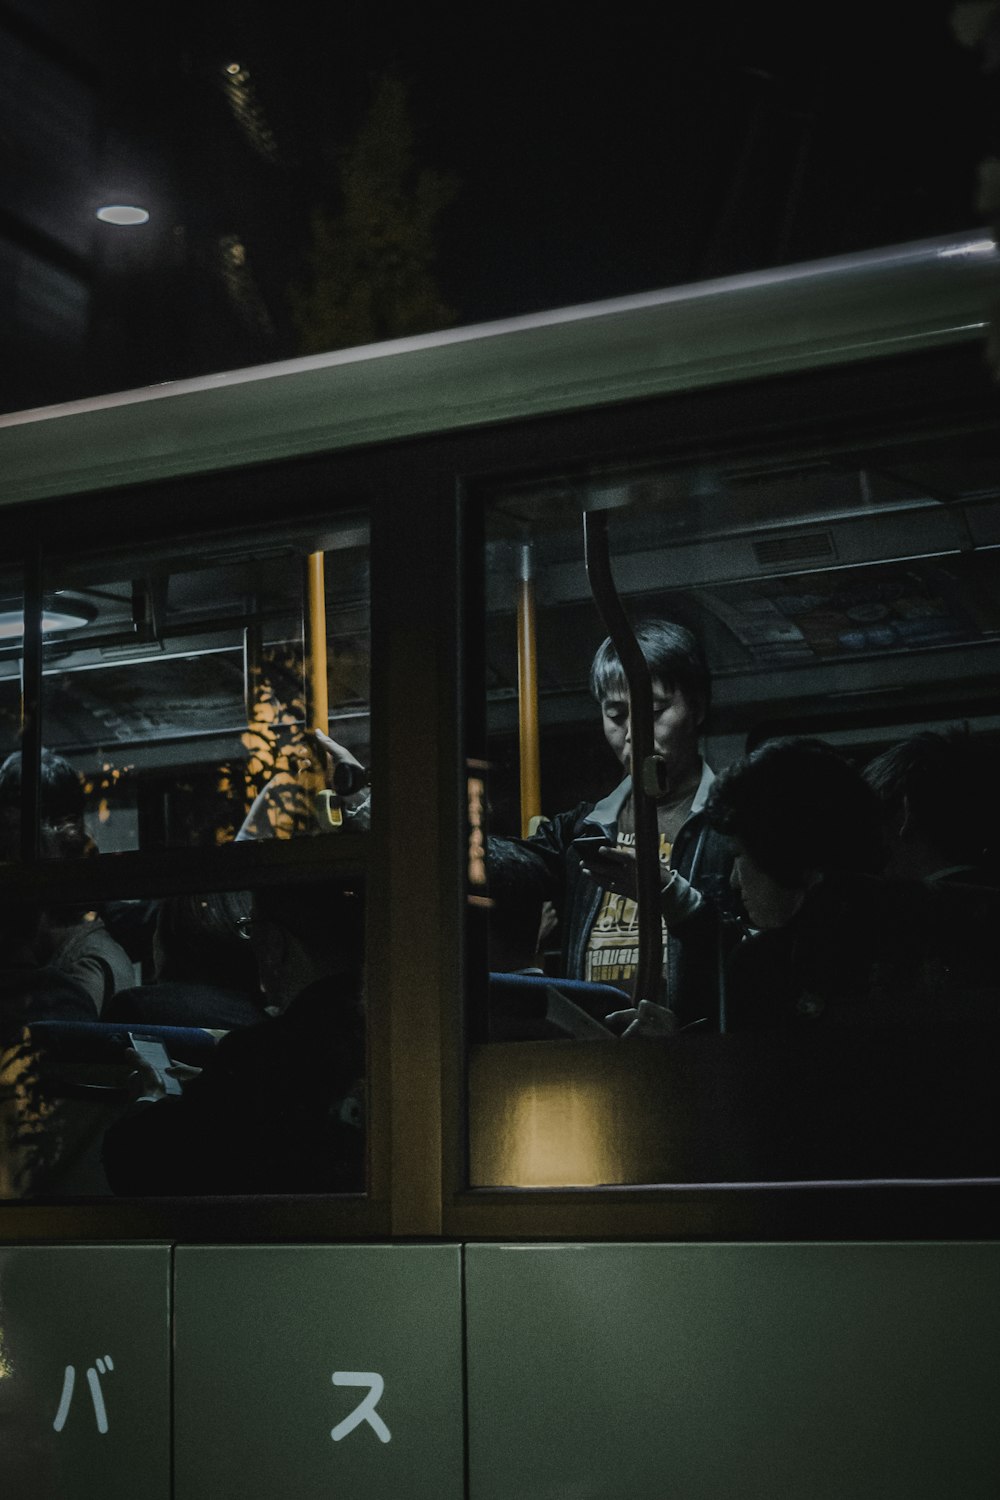 Persona parada dentro del tren mientras usa el teléfono inteligente frente a una ventana de vidrio transparente